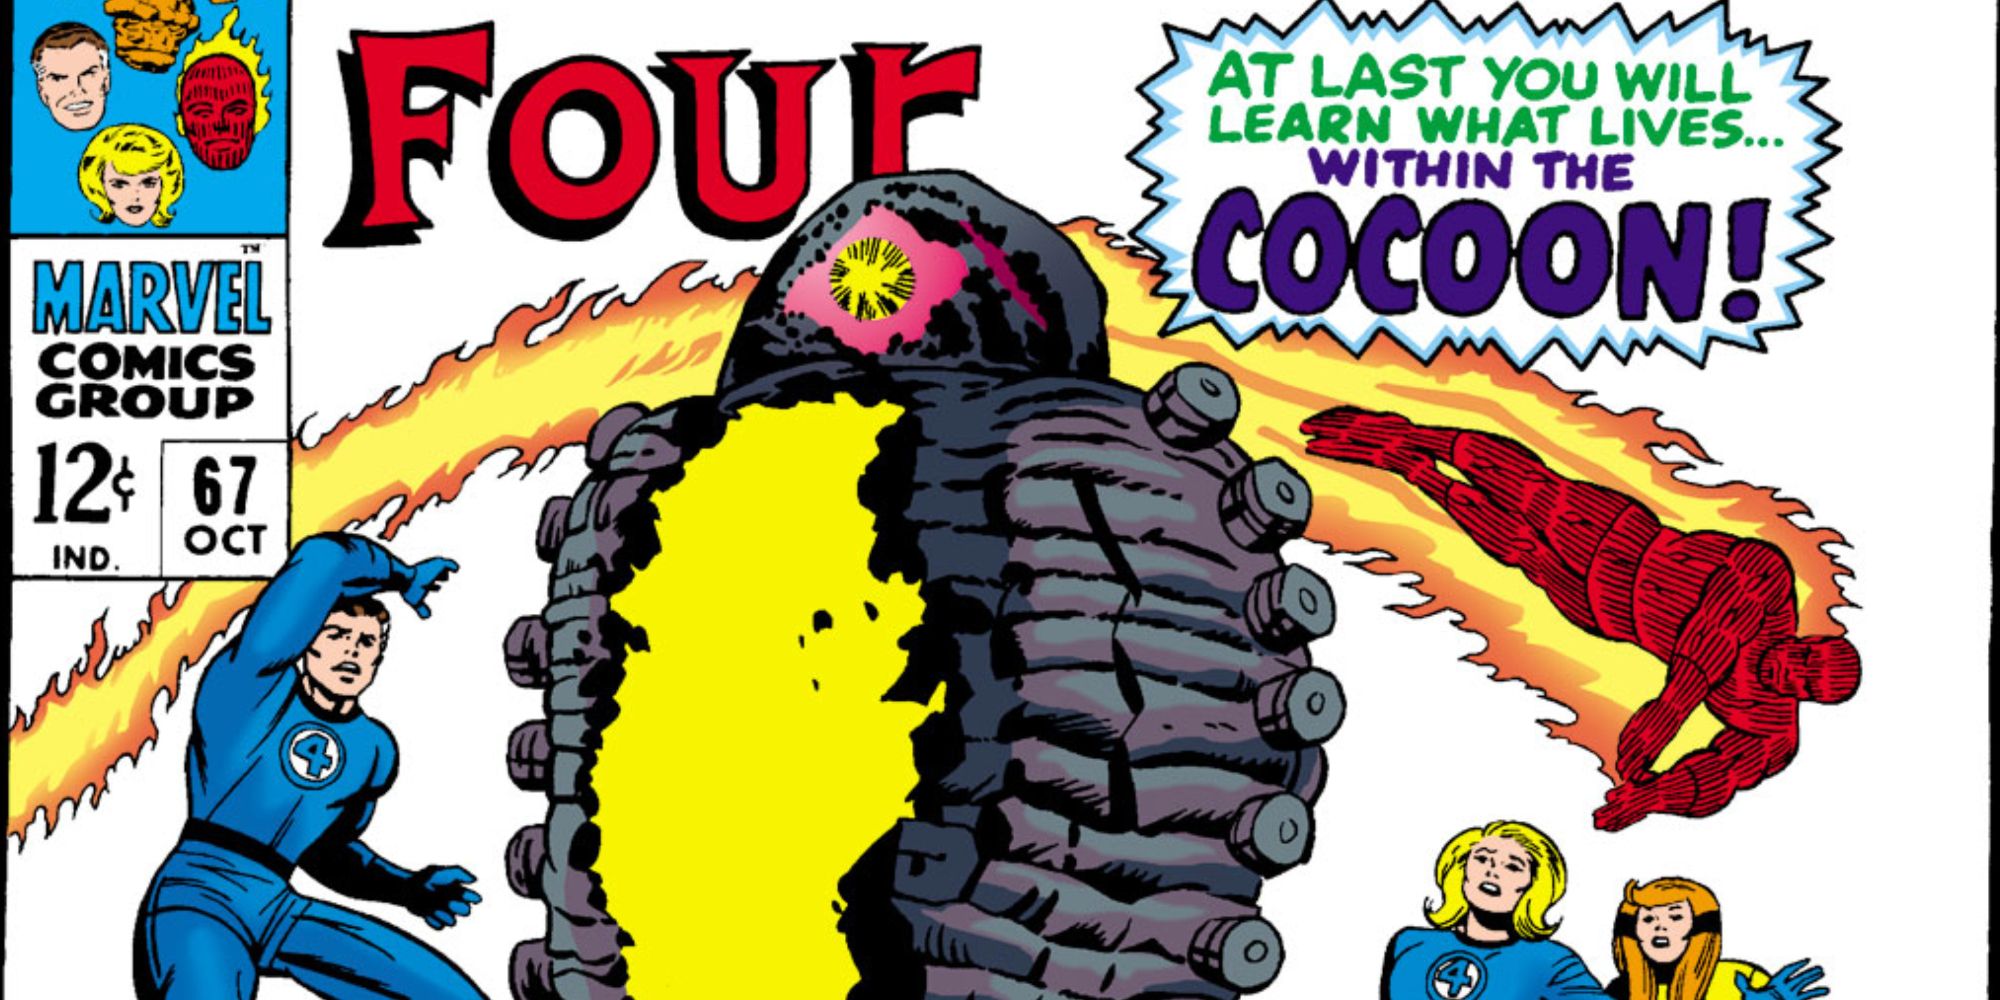 O Quarteto Fantástico o encontra na Marvel Comics.